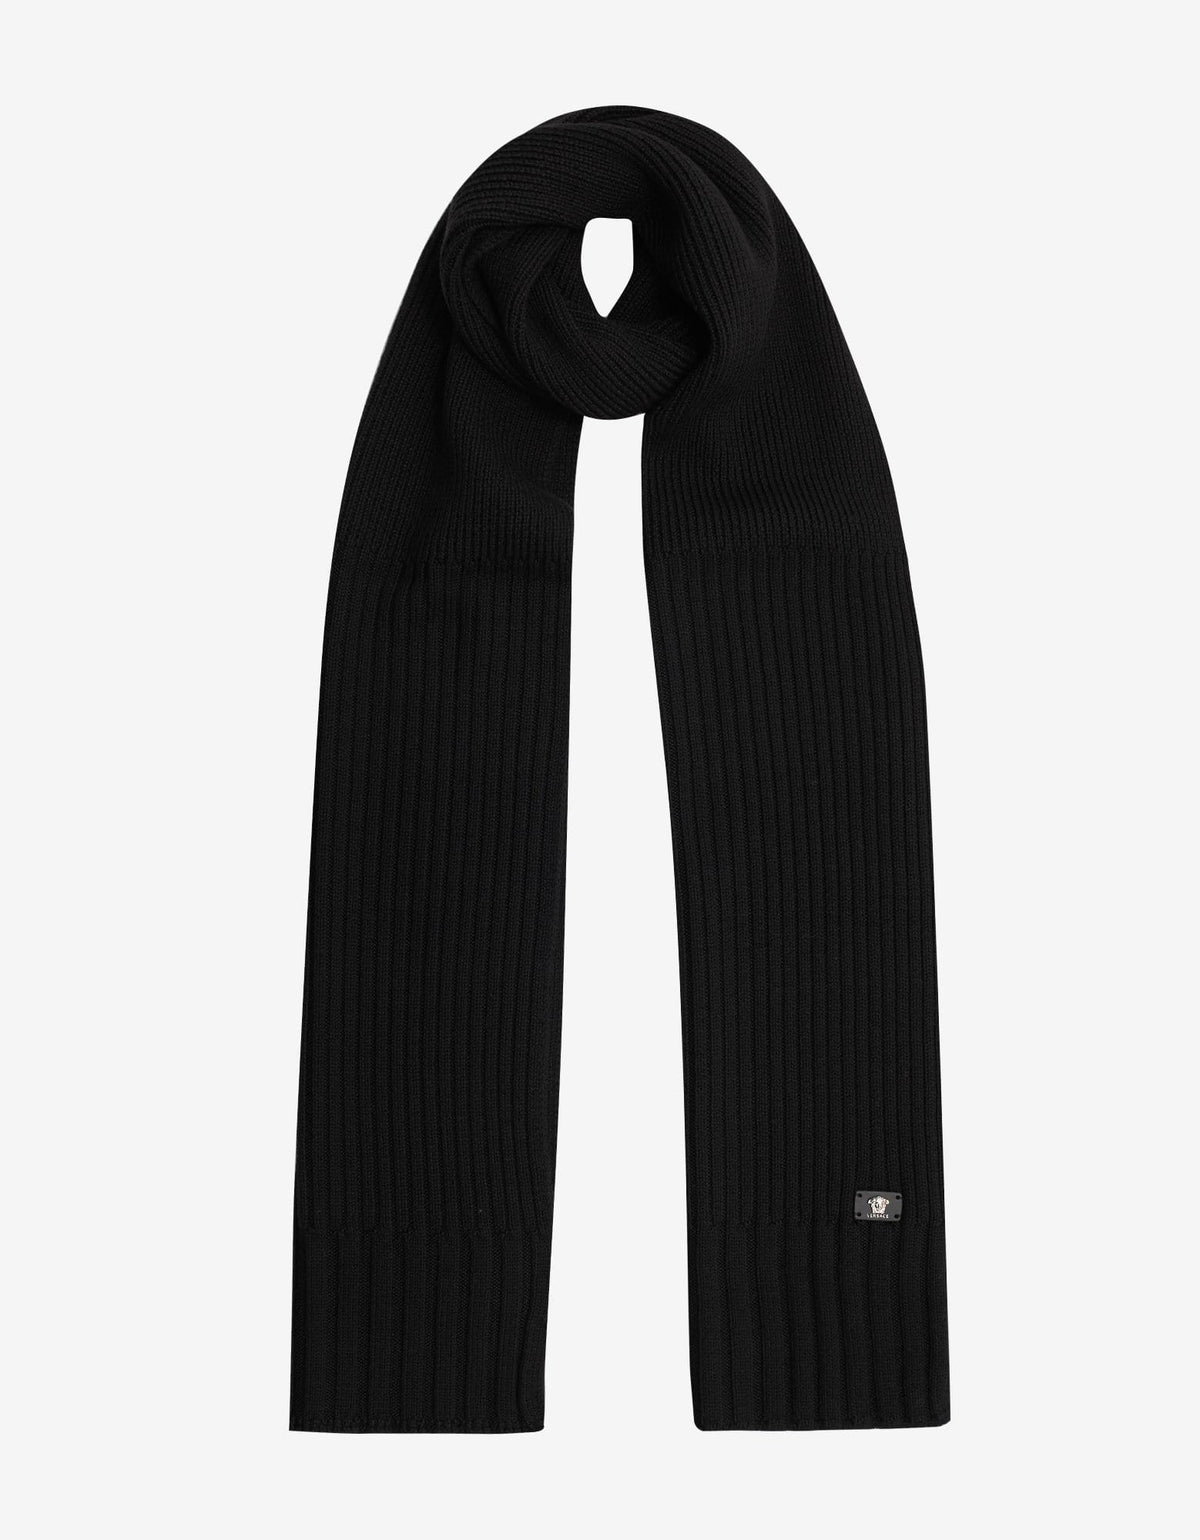 Versace Black Ribbed Wool Scarf